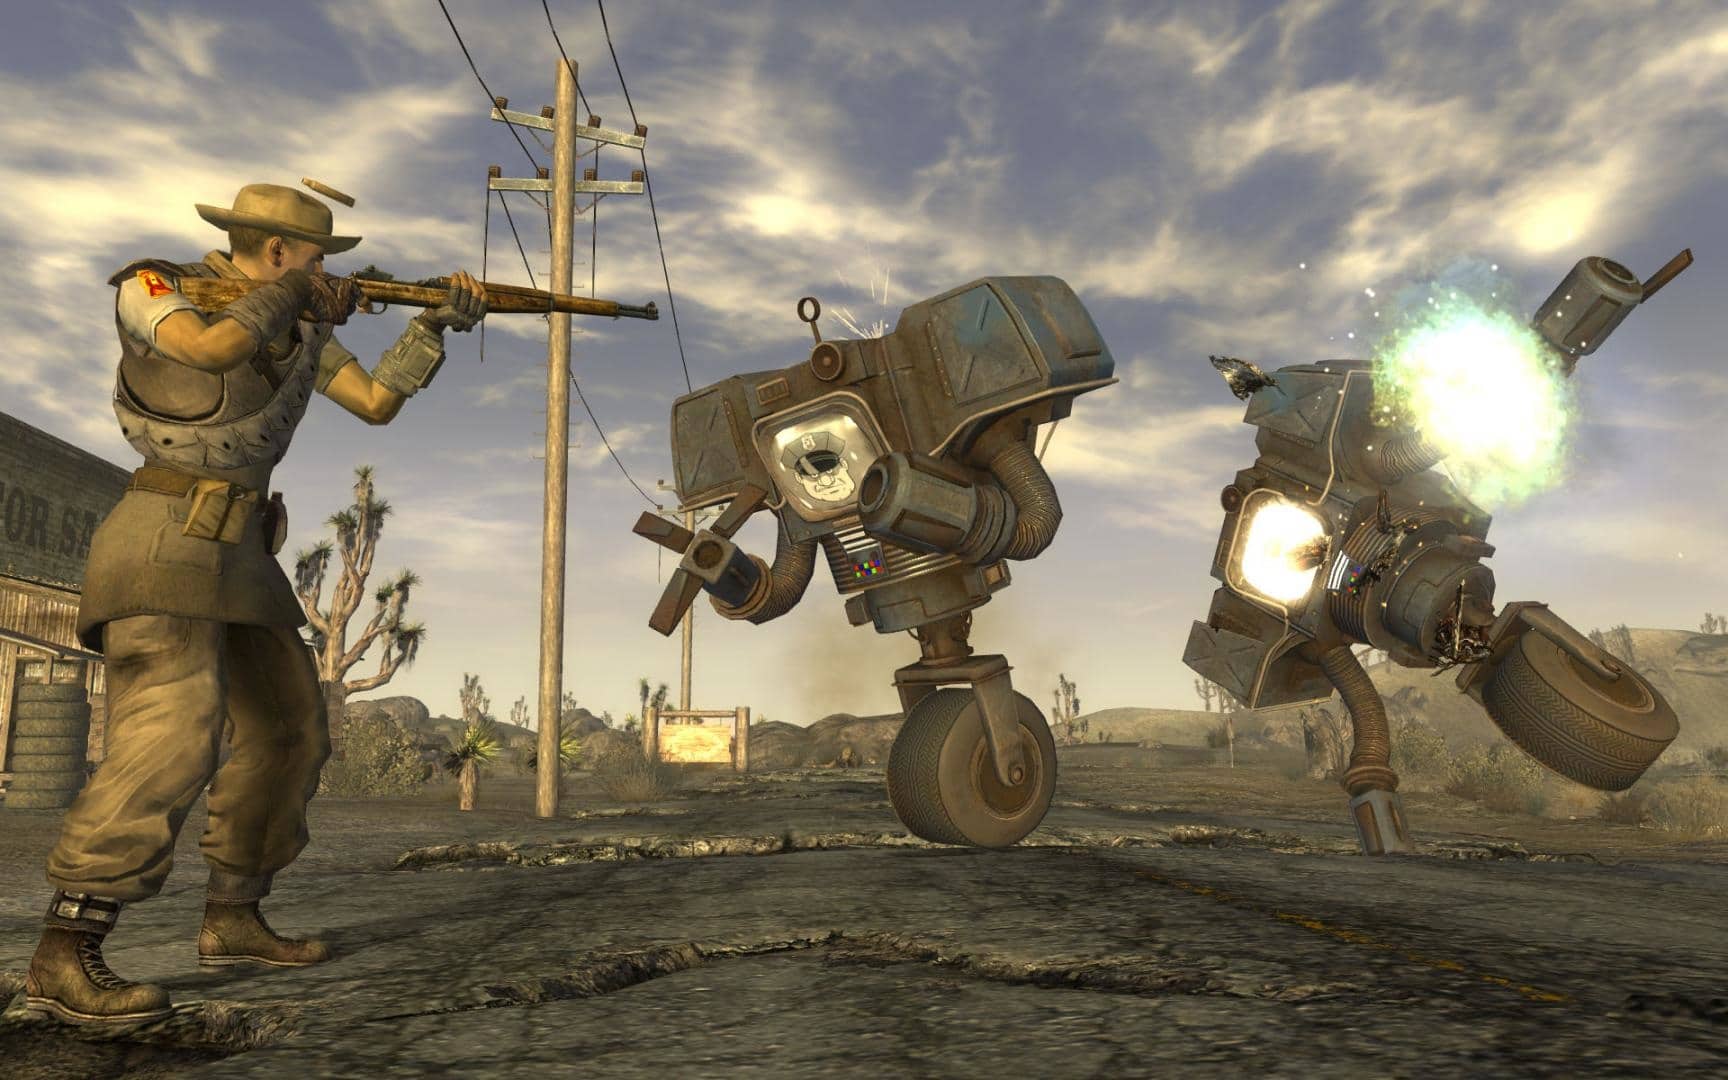 (De tweede worp levert Obsidian ook veel respect op) Fallout: New Vegas is een cult spel, maar heeft last van bugs. Uitgever Bethesda had waarschijnlijk een te krappe deadline gesteld voor de voltooiing.)